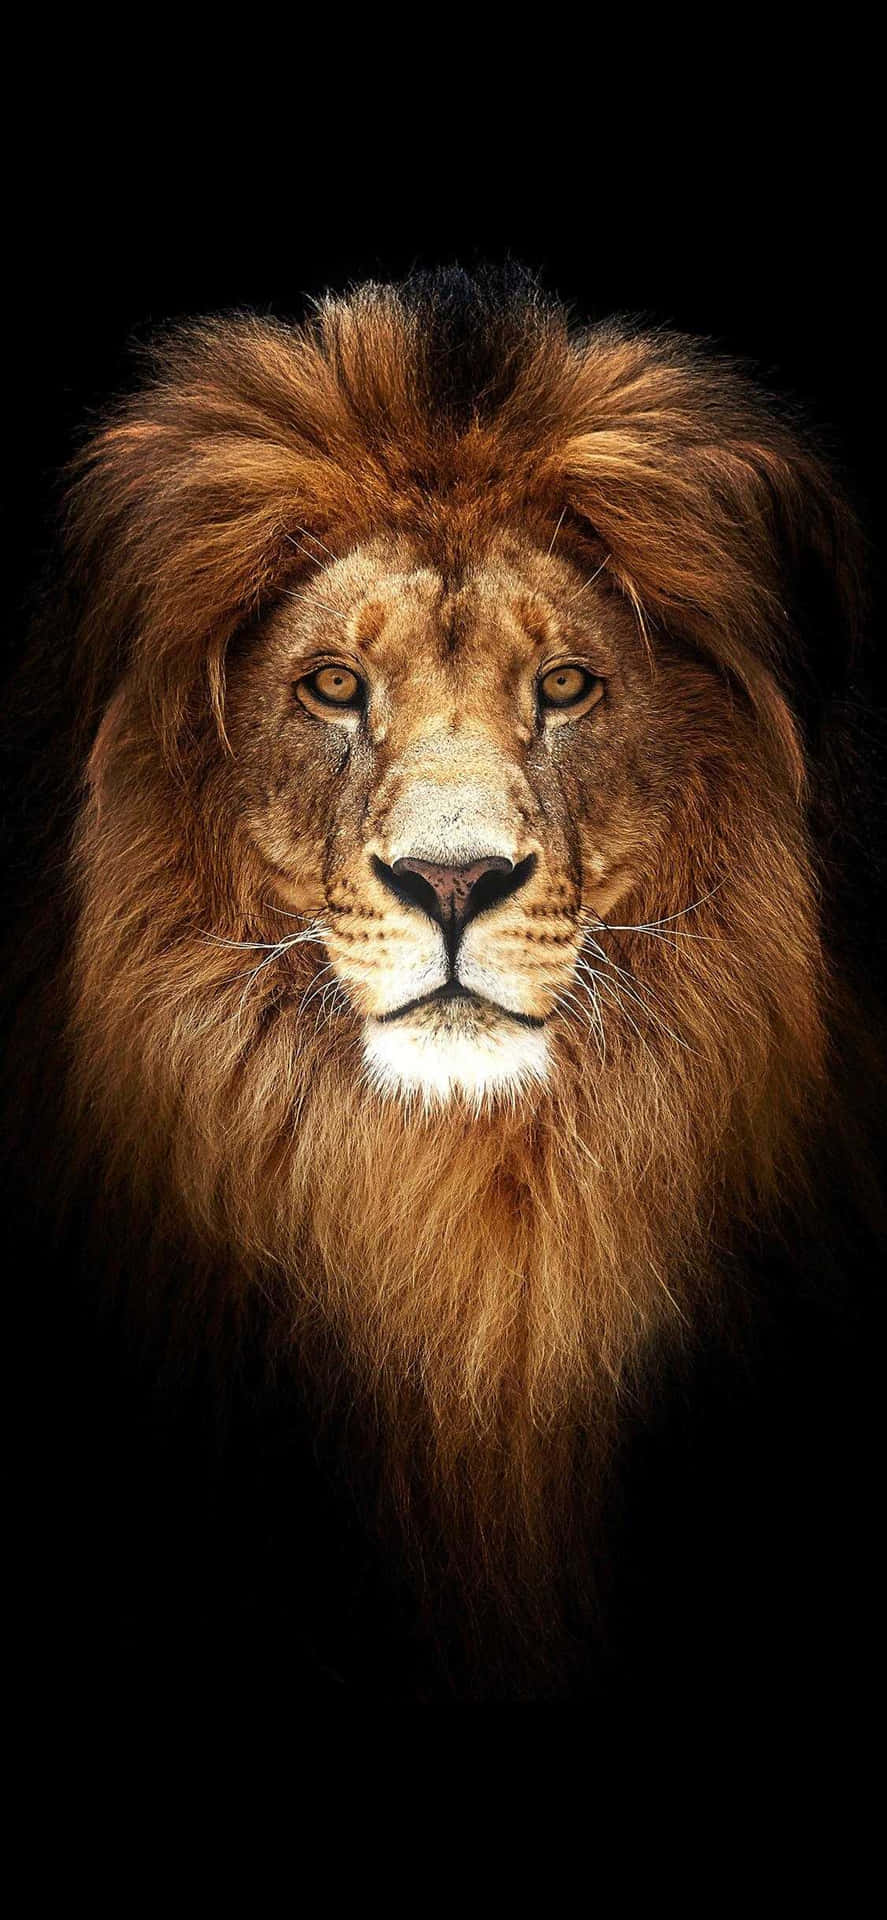 lion of judah wallpaper